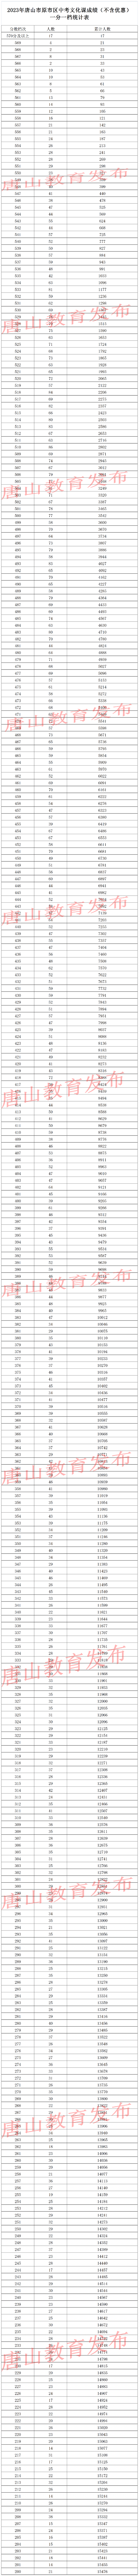 2023唐山中考一分一段表 中考成绩排名